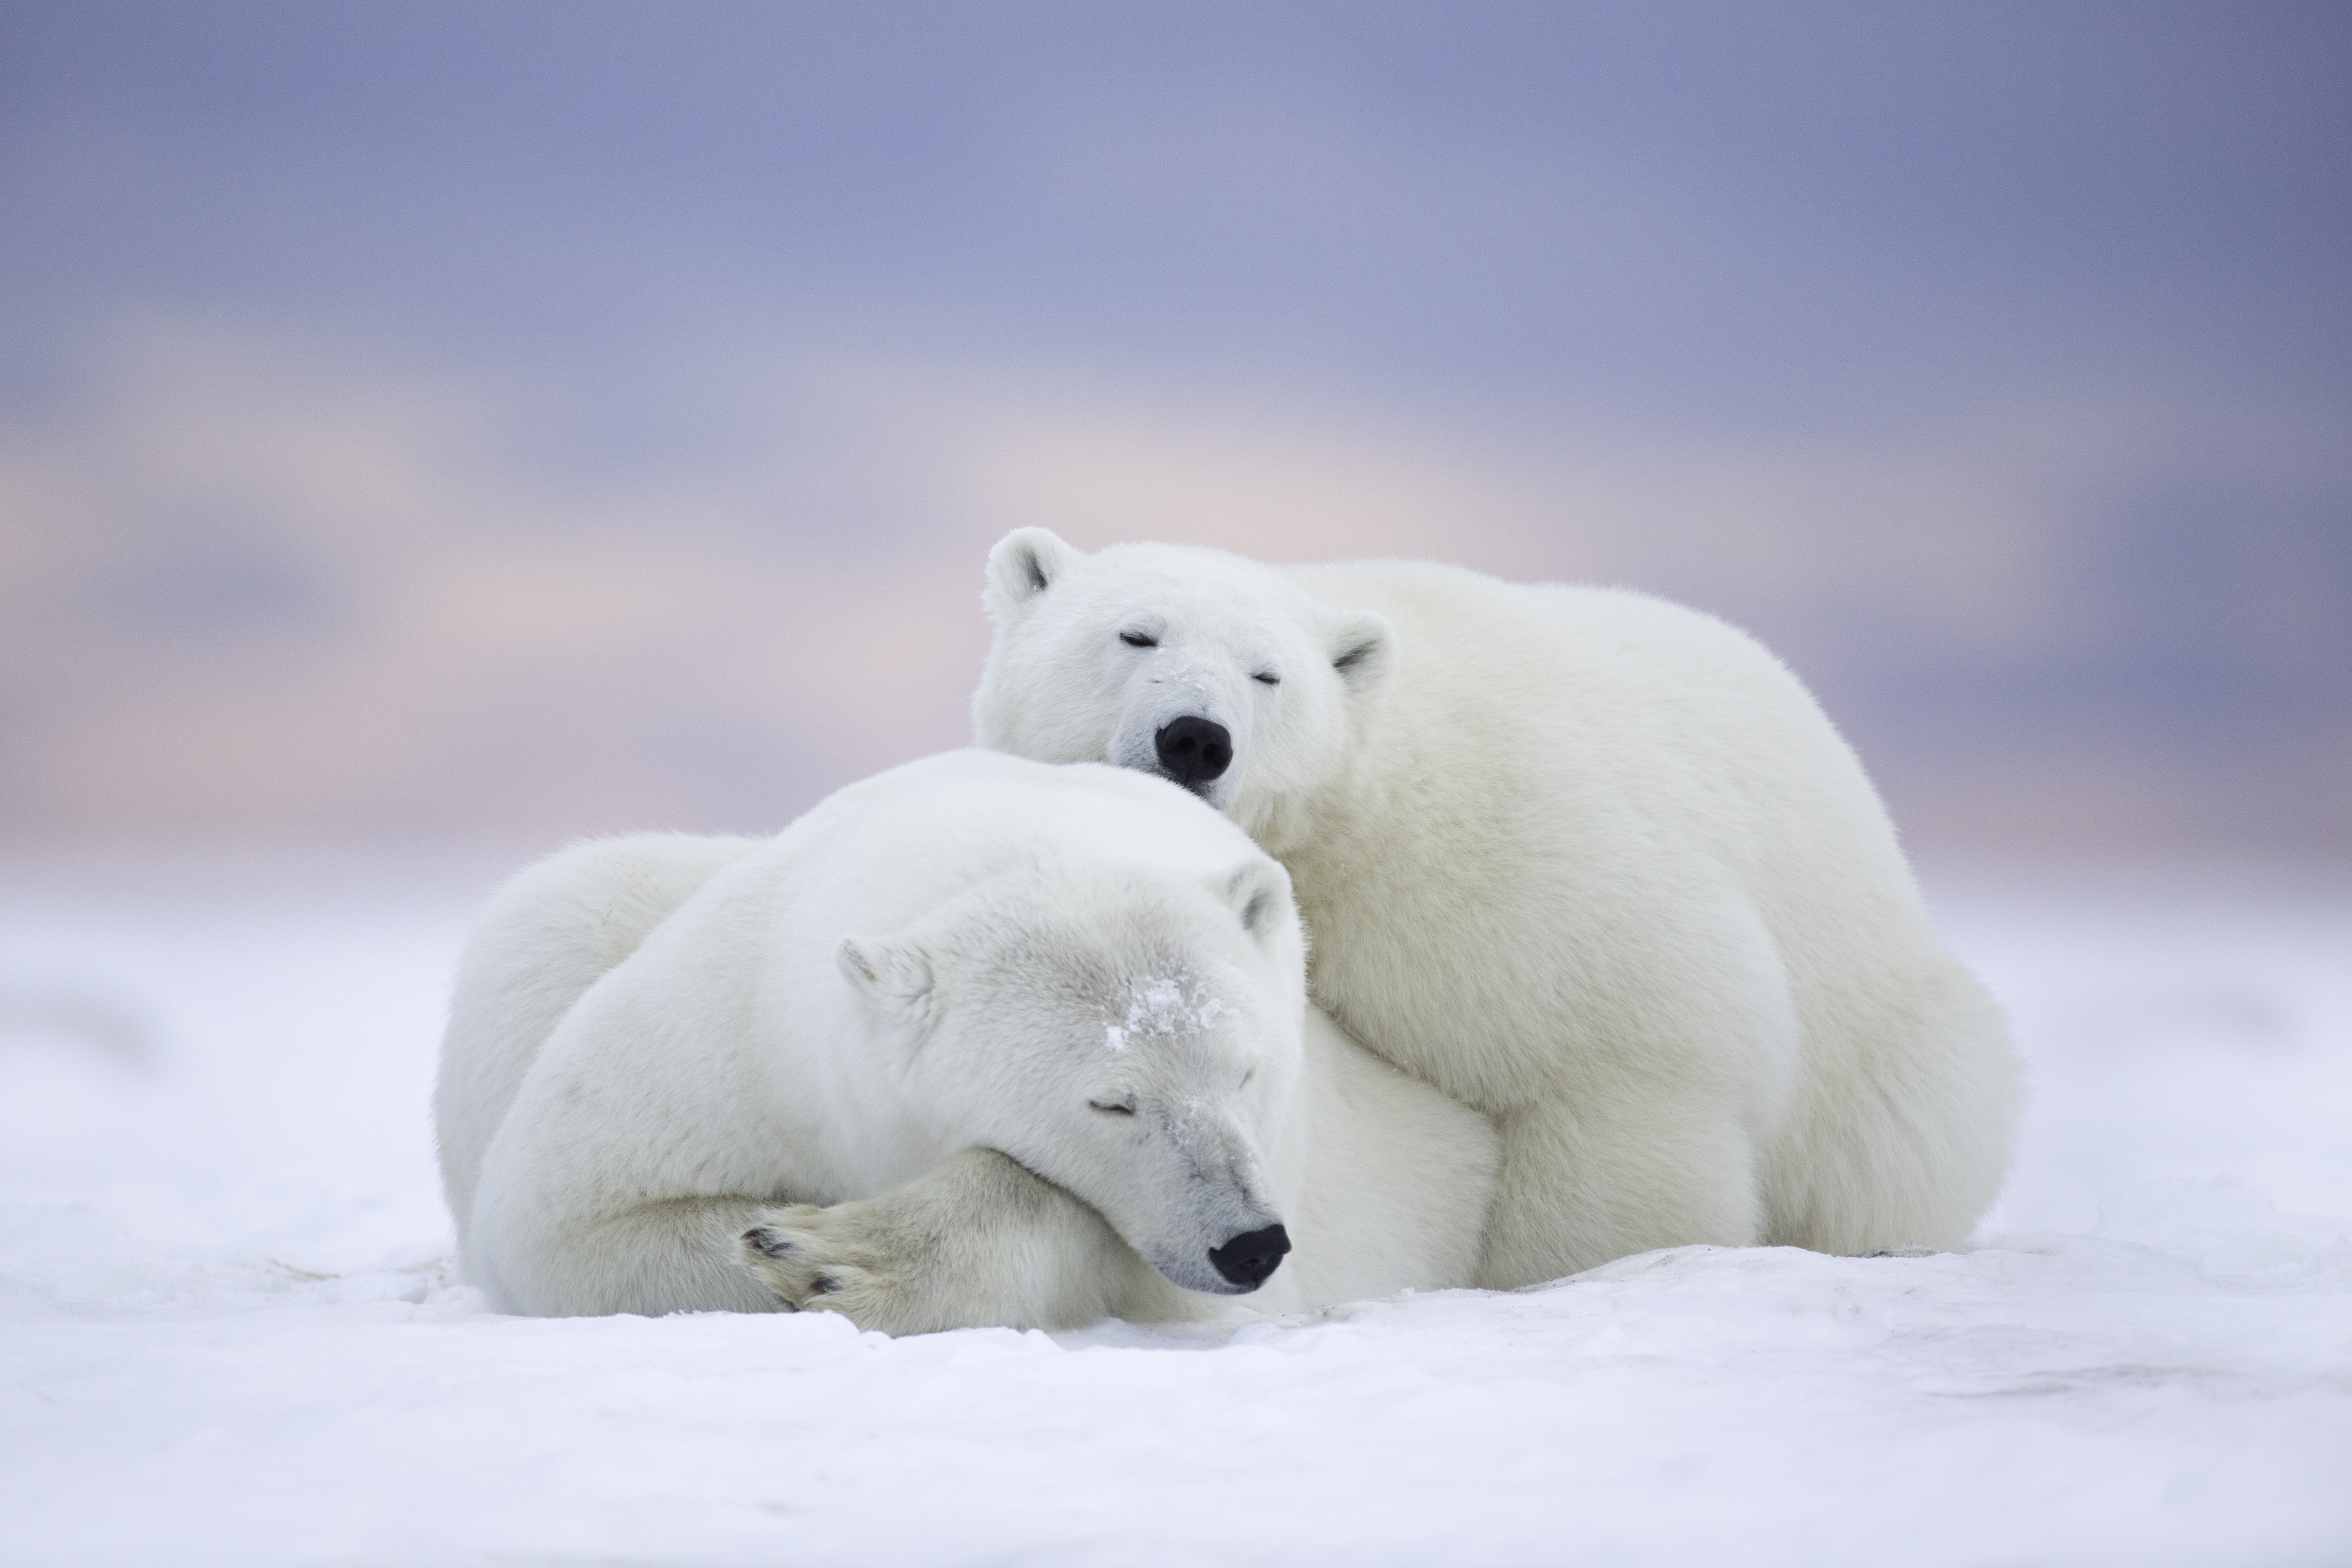 374957 обои 720x1520 на телефон бесплатно, скачать картинки полярный медведь, медведь, животные, медведи 720x1520 на мобильный